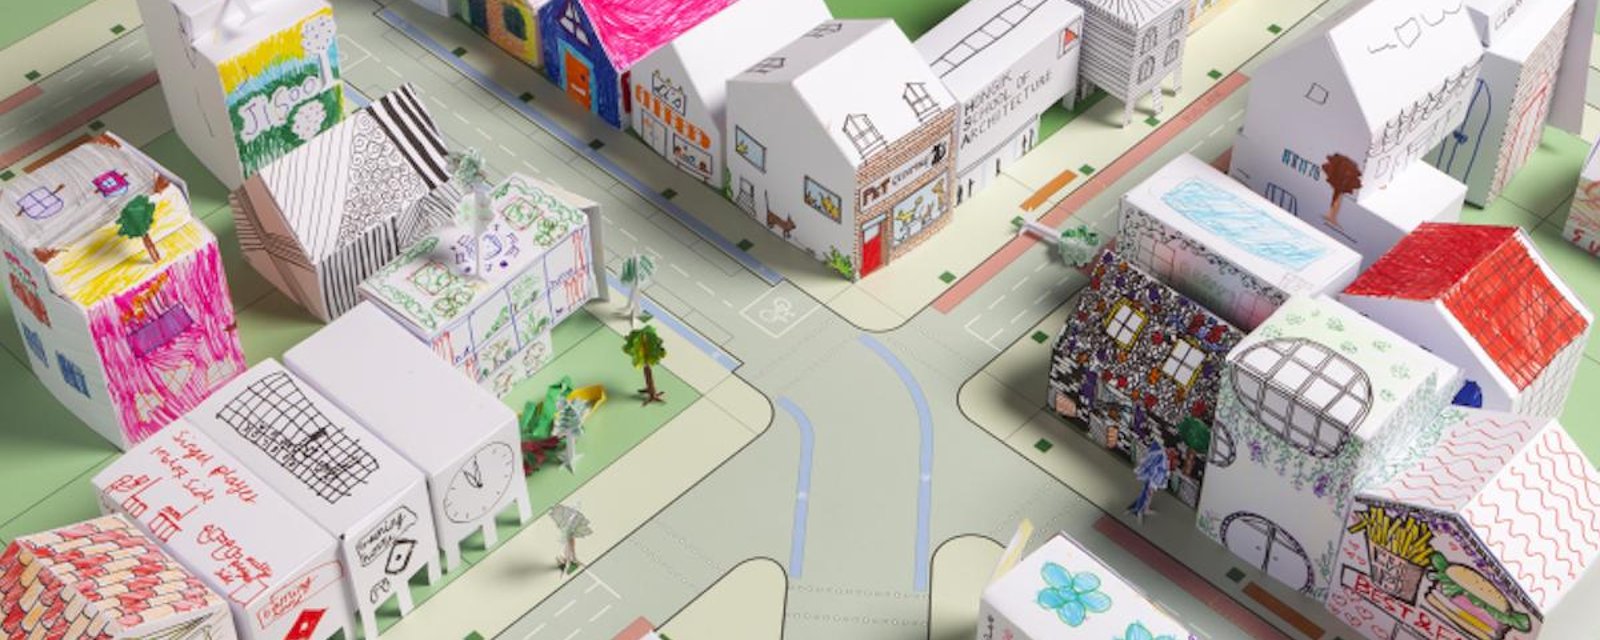 Un cabinet d’architectes invite les enfants à créer leurs propres villes en origamis